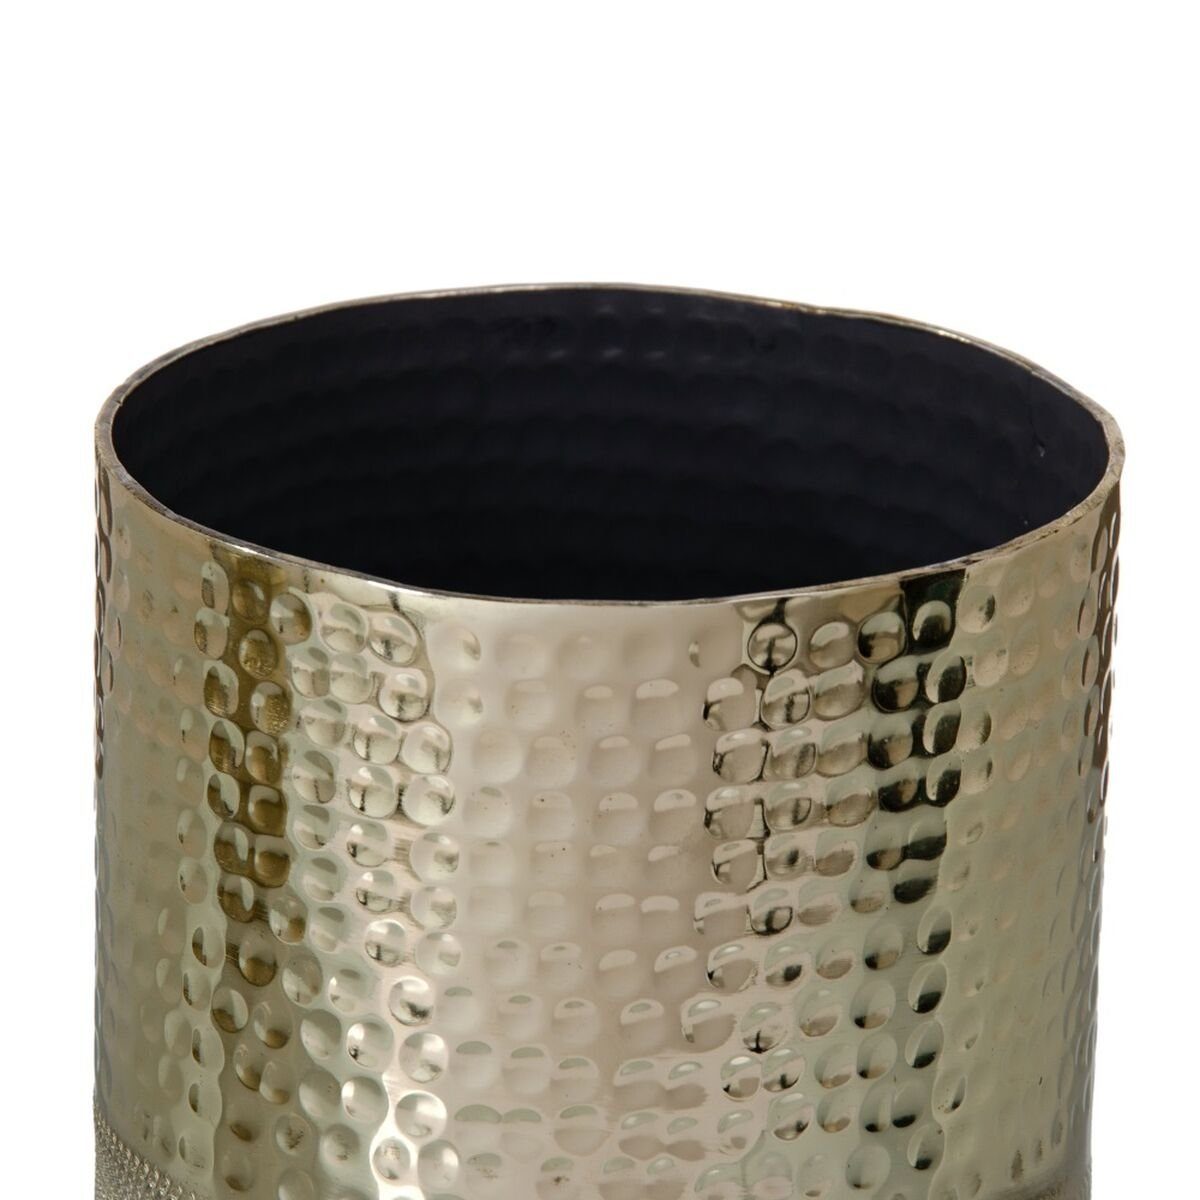 Aluminium cm x 13 13 Bigbuy x 13 Dekovase Gold Vase